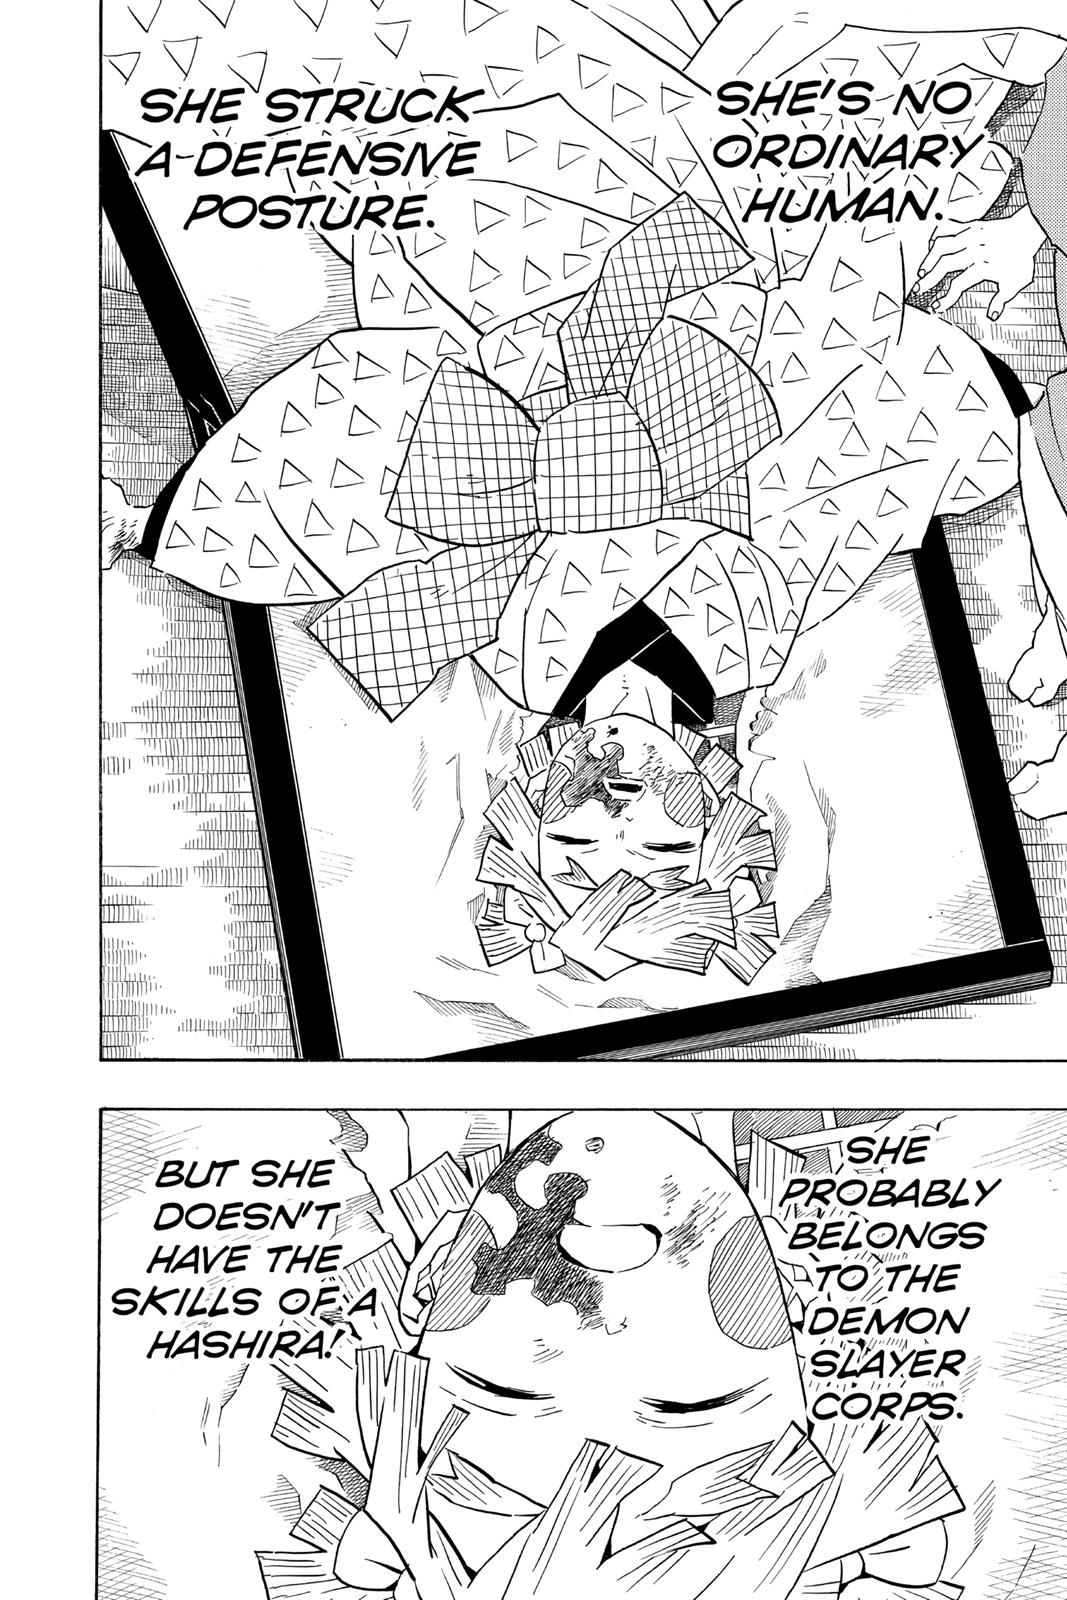 Demon Slayer Manga Manga Chapter - 74 - image 16